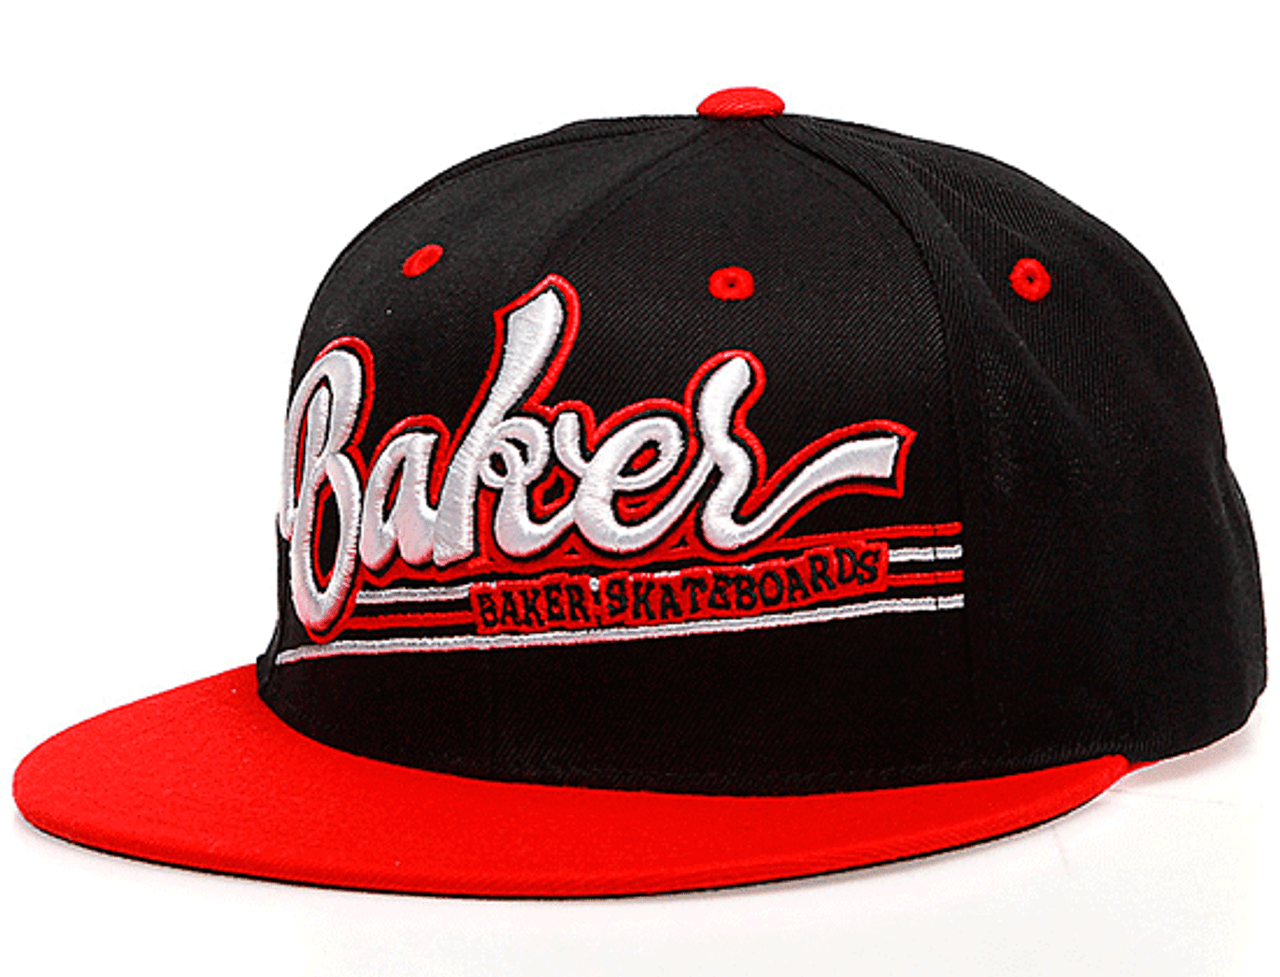 Order Trucker Baker Cap, white/red